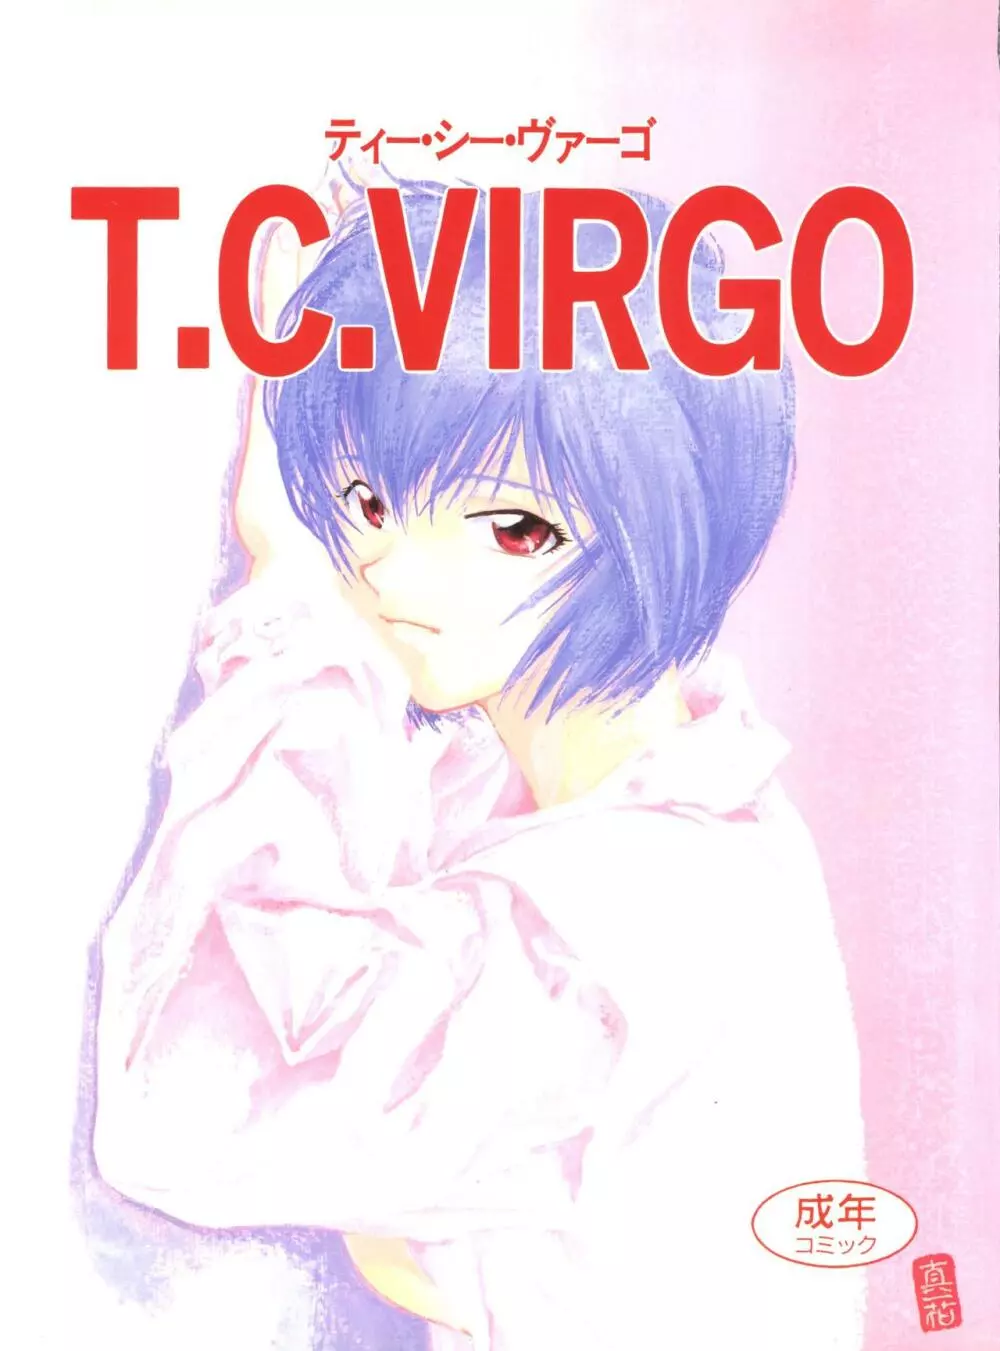 T.C.VIRGO